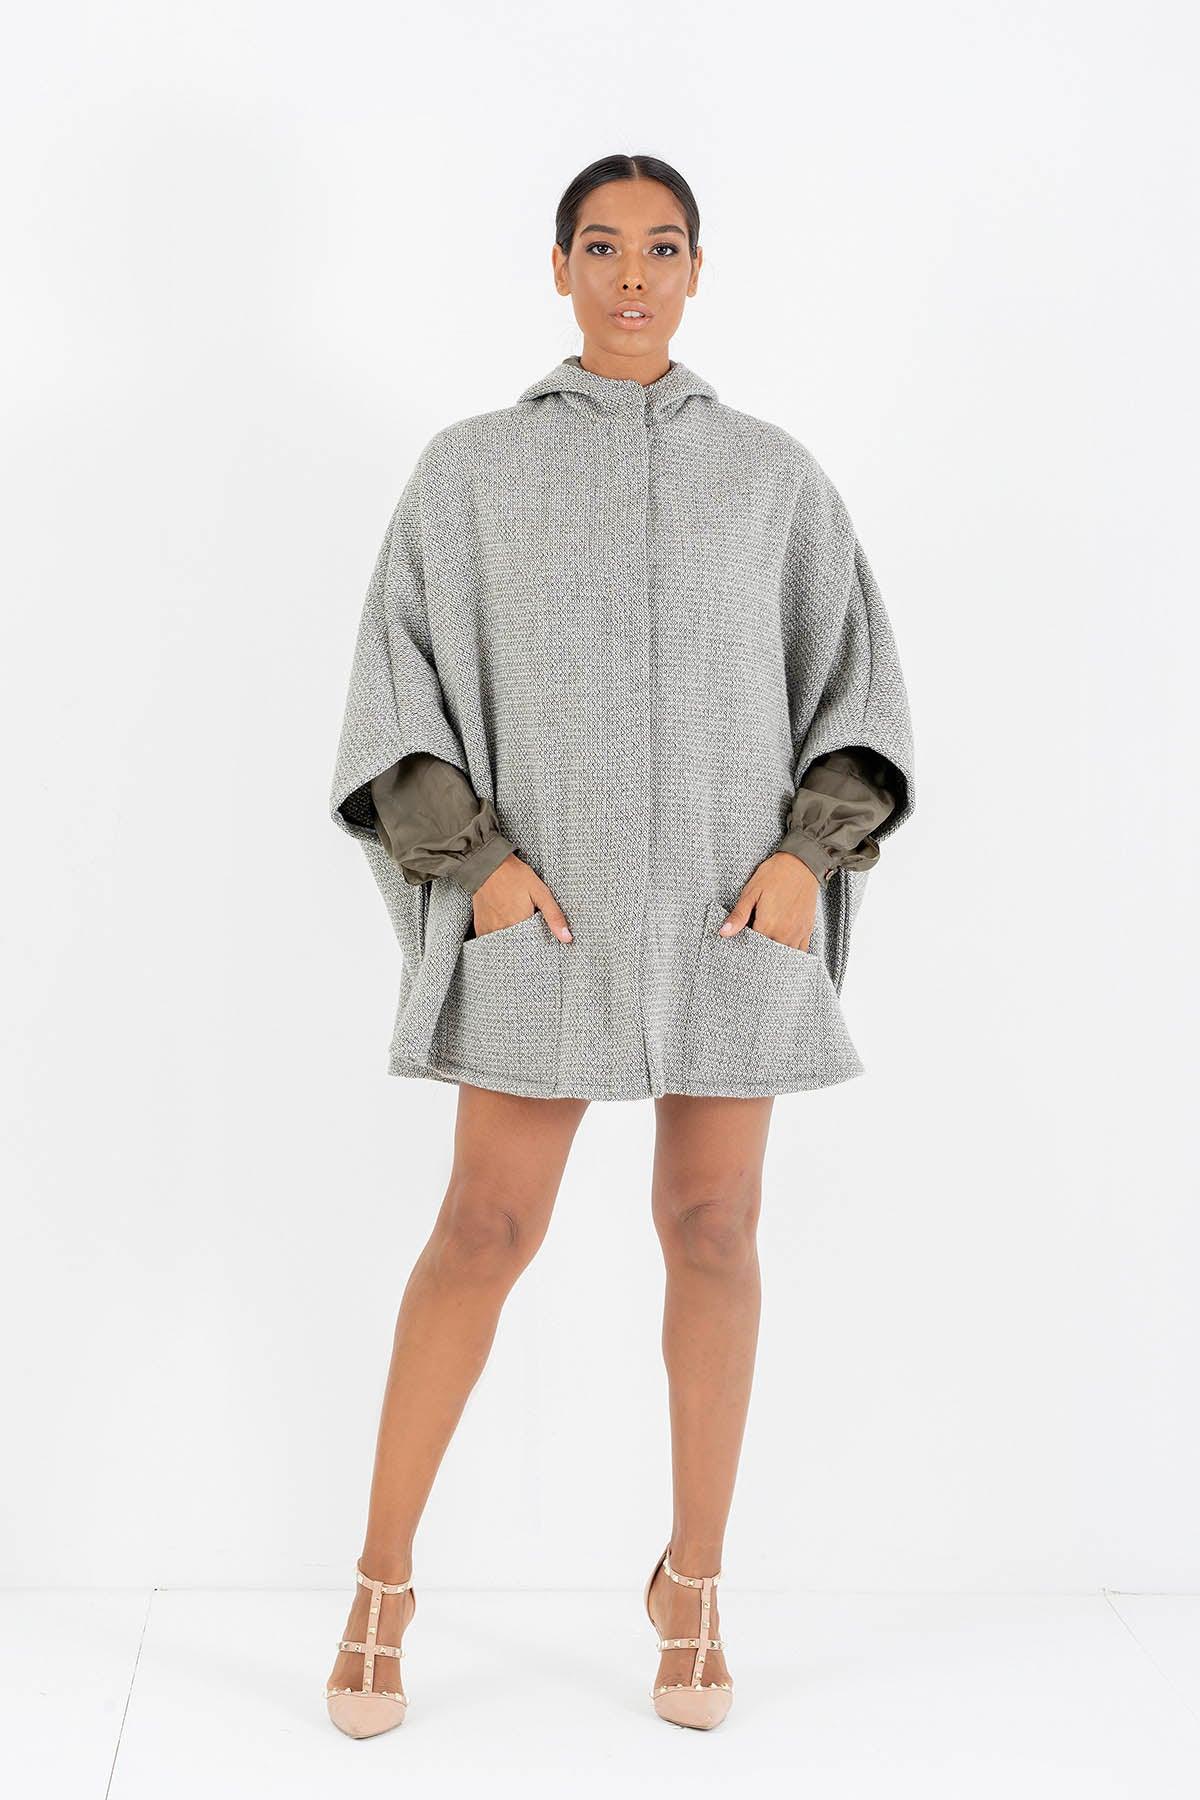 Mantella in lana biologica invernale comoda ampia brand malia lab abbigliamento biologico sostenibile abbigliamento sartoriale donna ecosostenibile